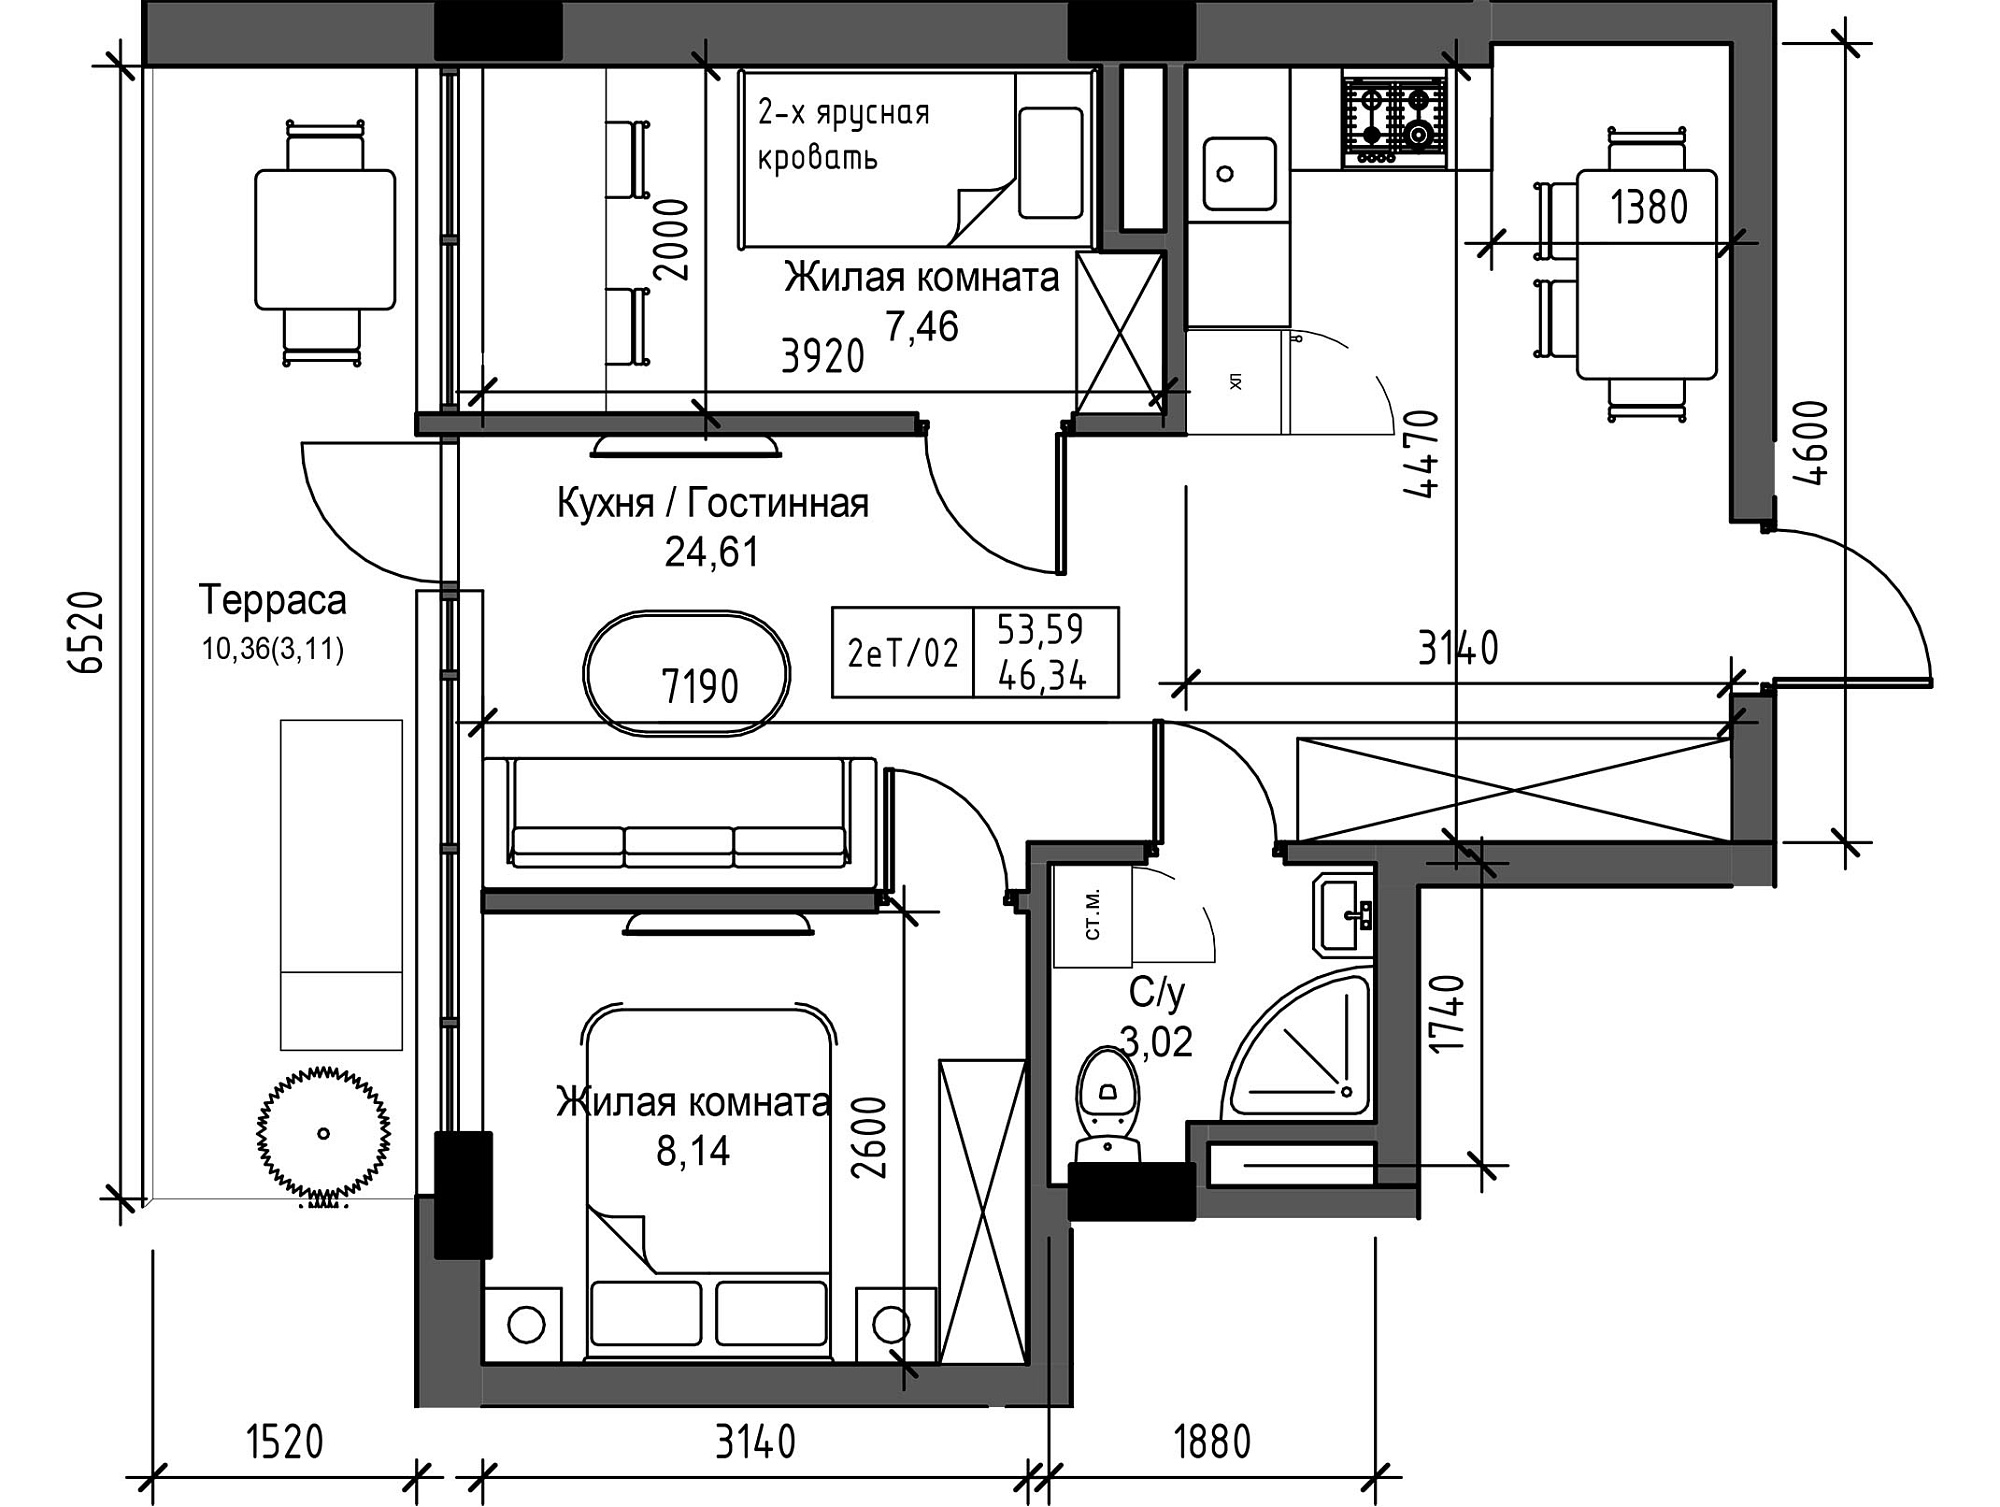 Планировка 2-к квартира площей 43.32м2, UM-003-10/0108.